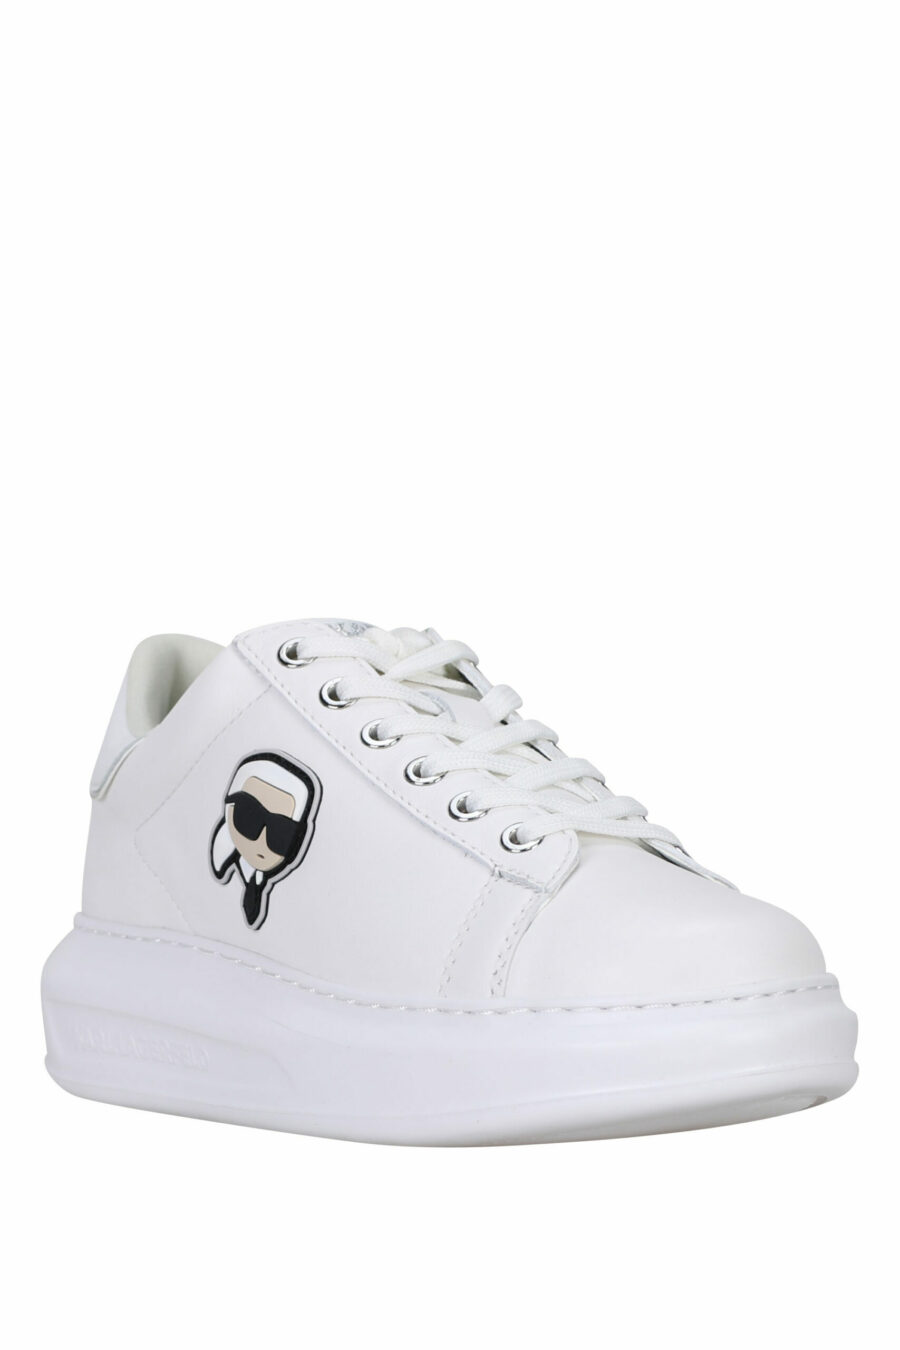 Zapatillas blancas "Kapri" con logo en goma y detalle blanco - 5059529351211 1 scaled